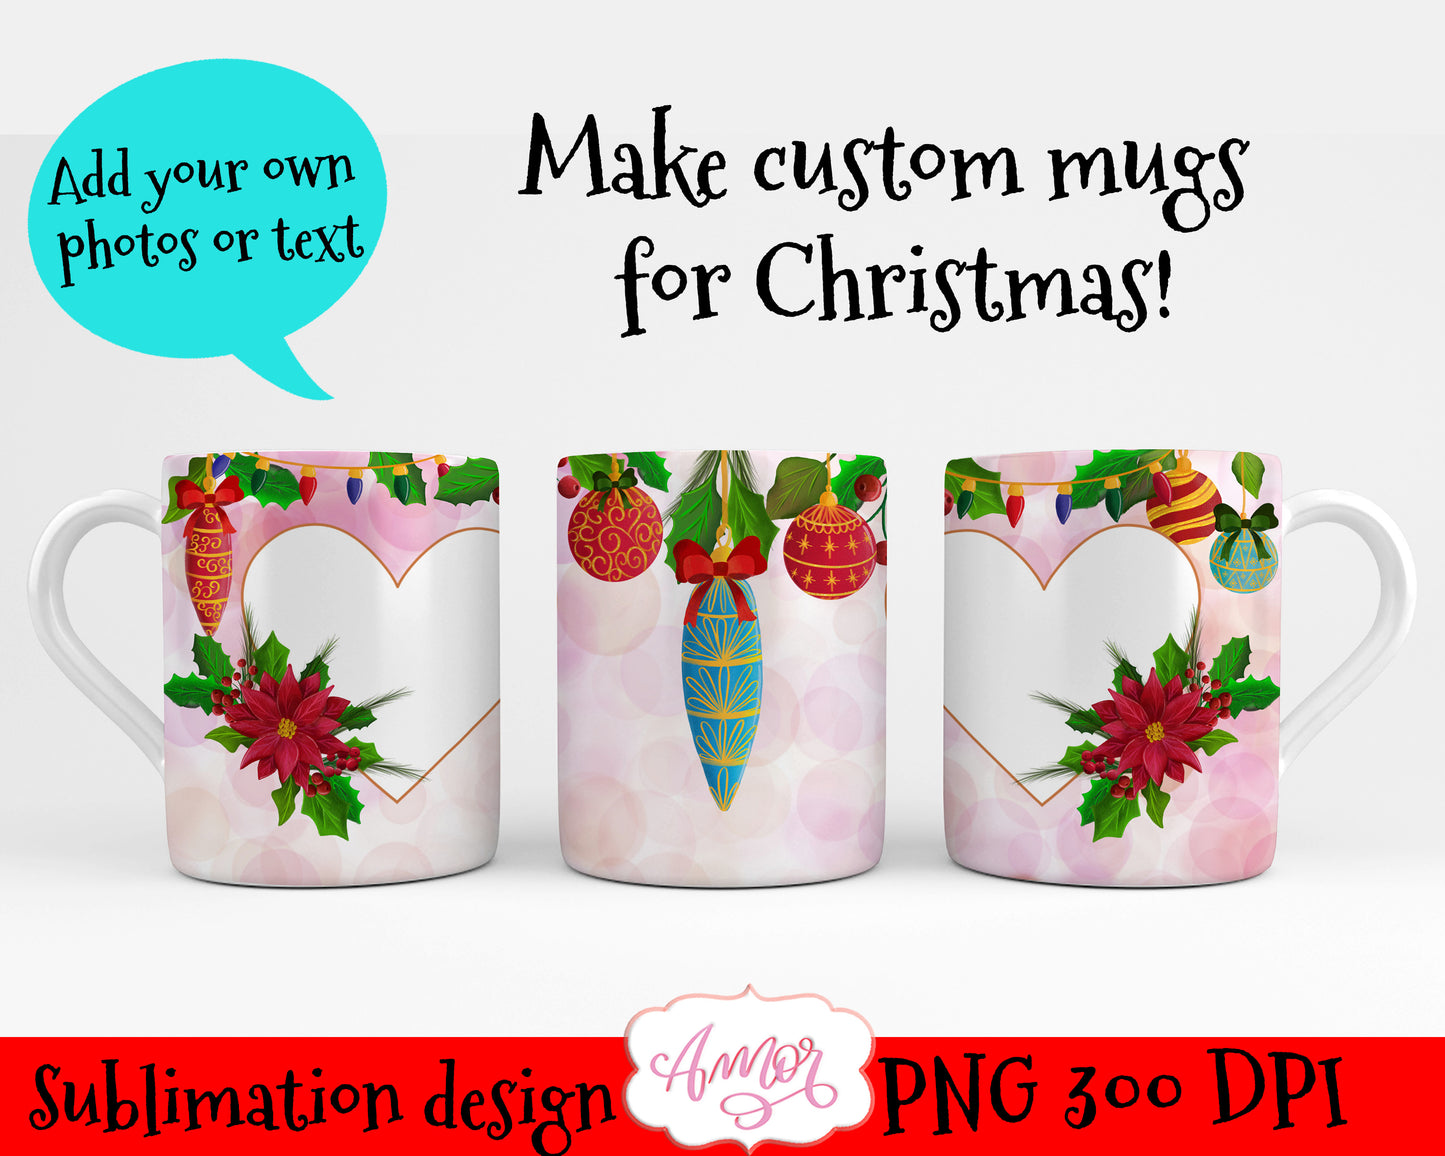 Christmas photo mug template for sublimation